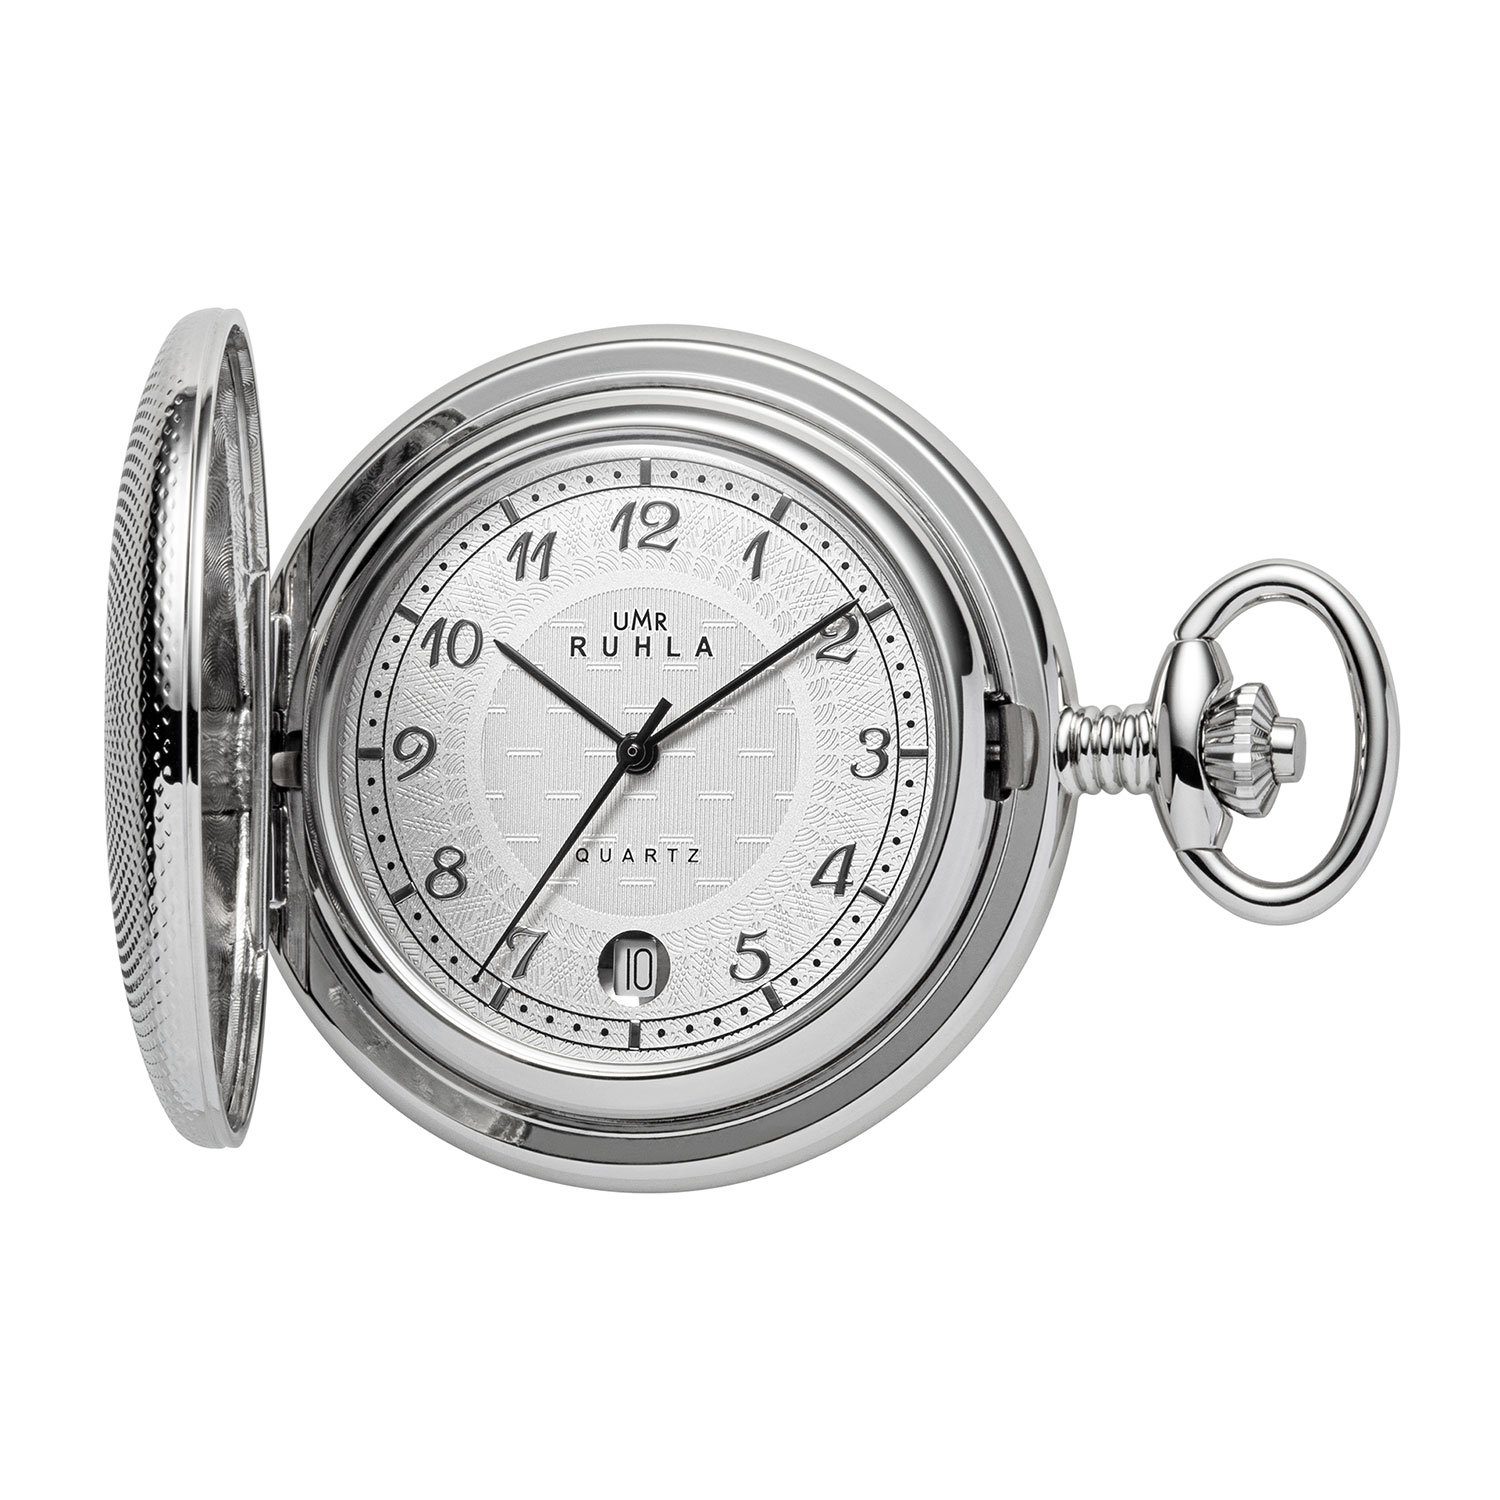 UMR Ruhla Taschenuhr Uhren Manufaktur Ruhla - Quarz-Taschenuhr | Taschenuhren